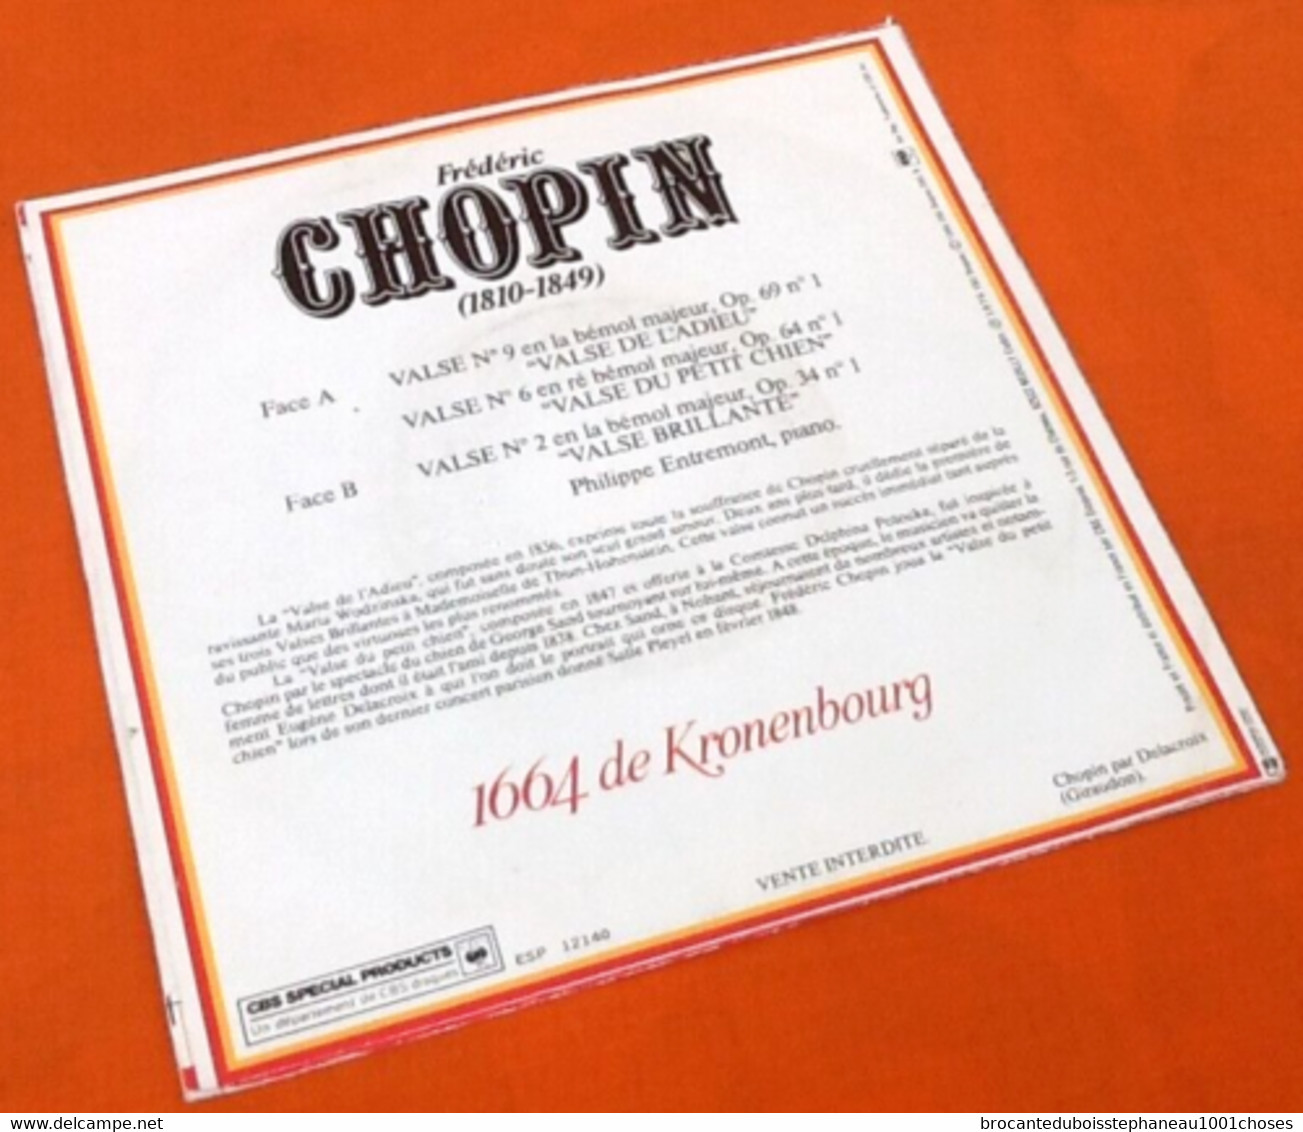 Vinyle 45 Tours  Frédéric  Chopin / Philippe Entremont  Valses  (1976) - Clásica